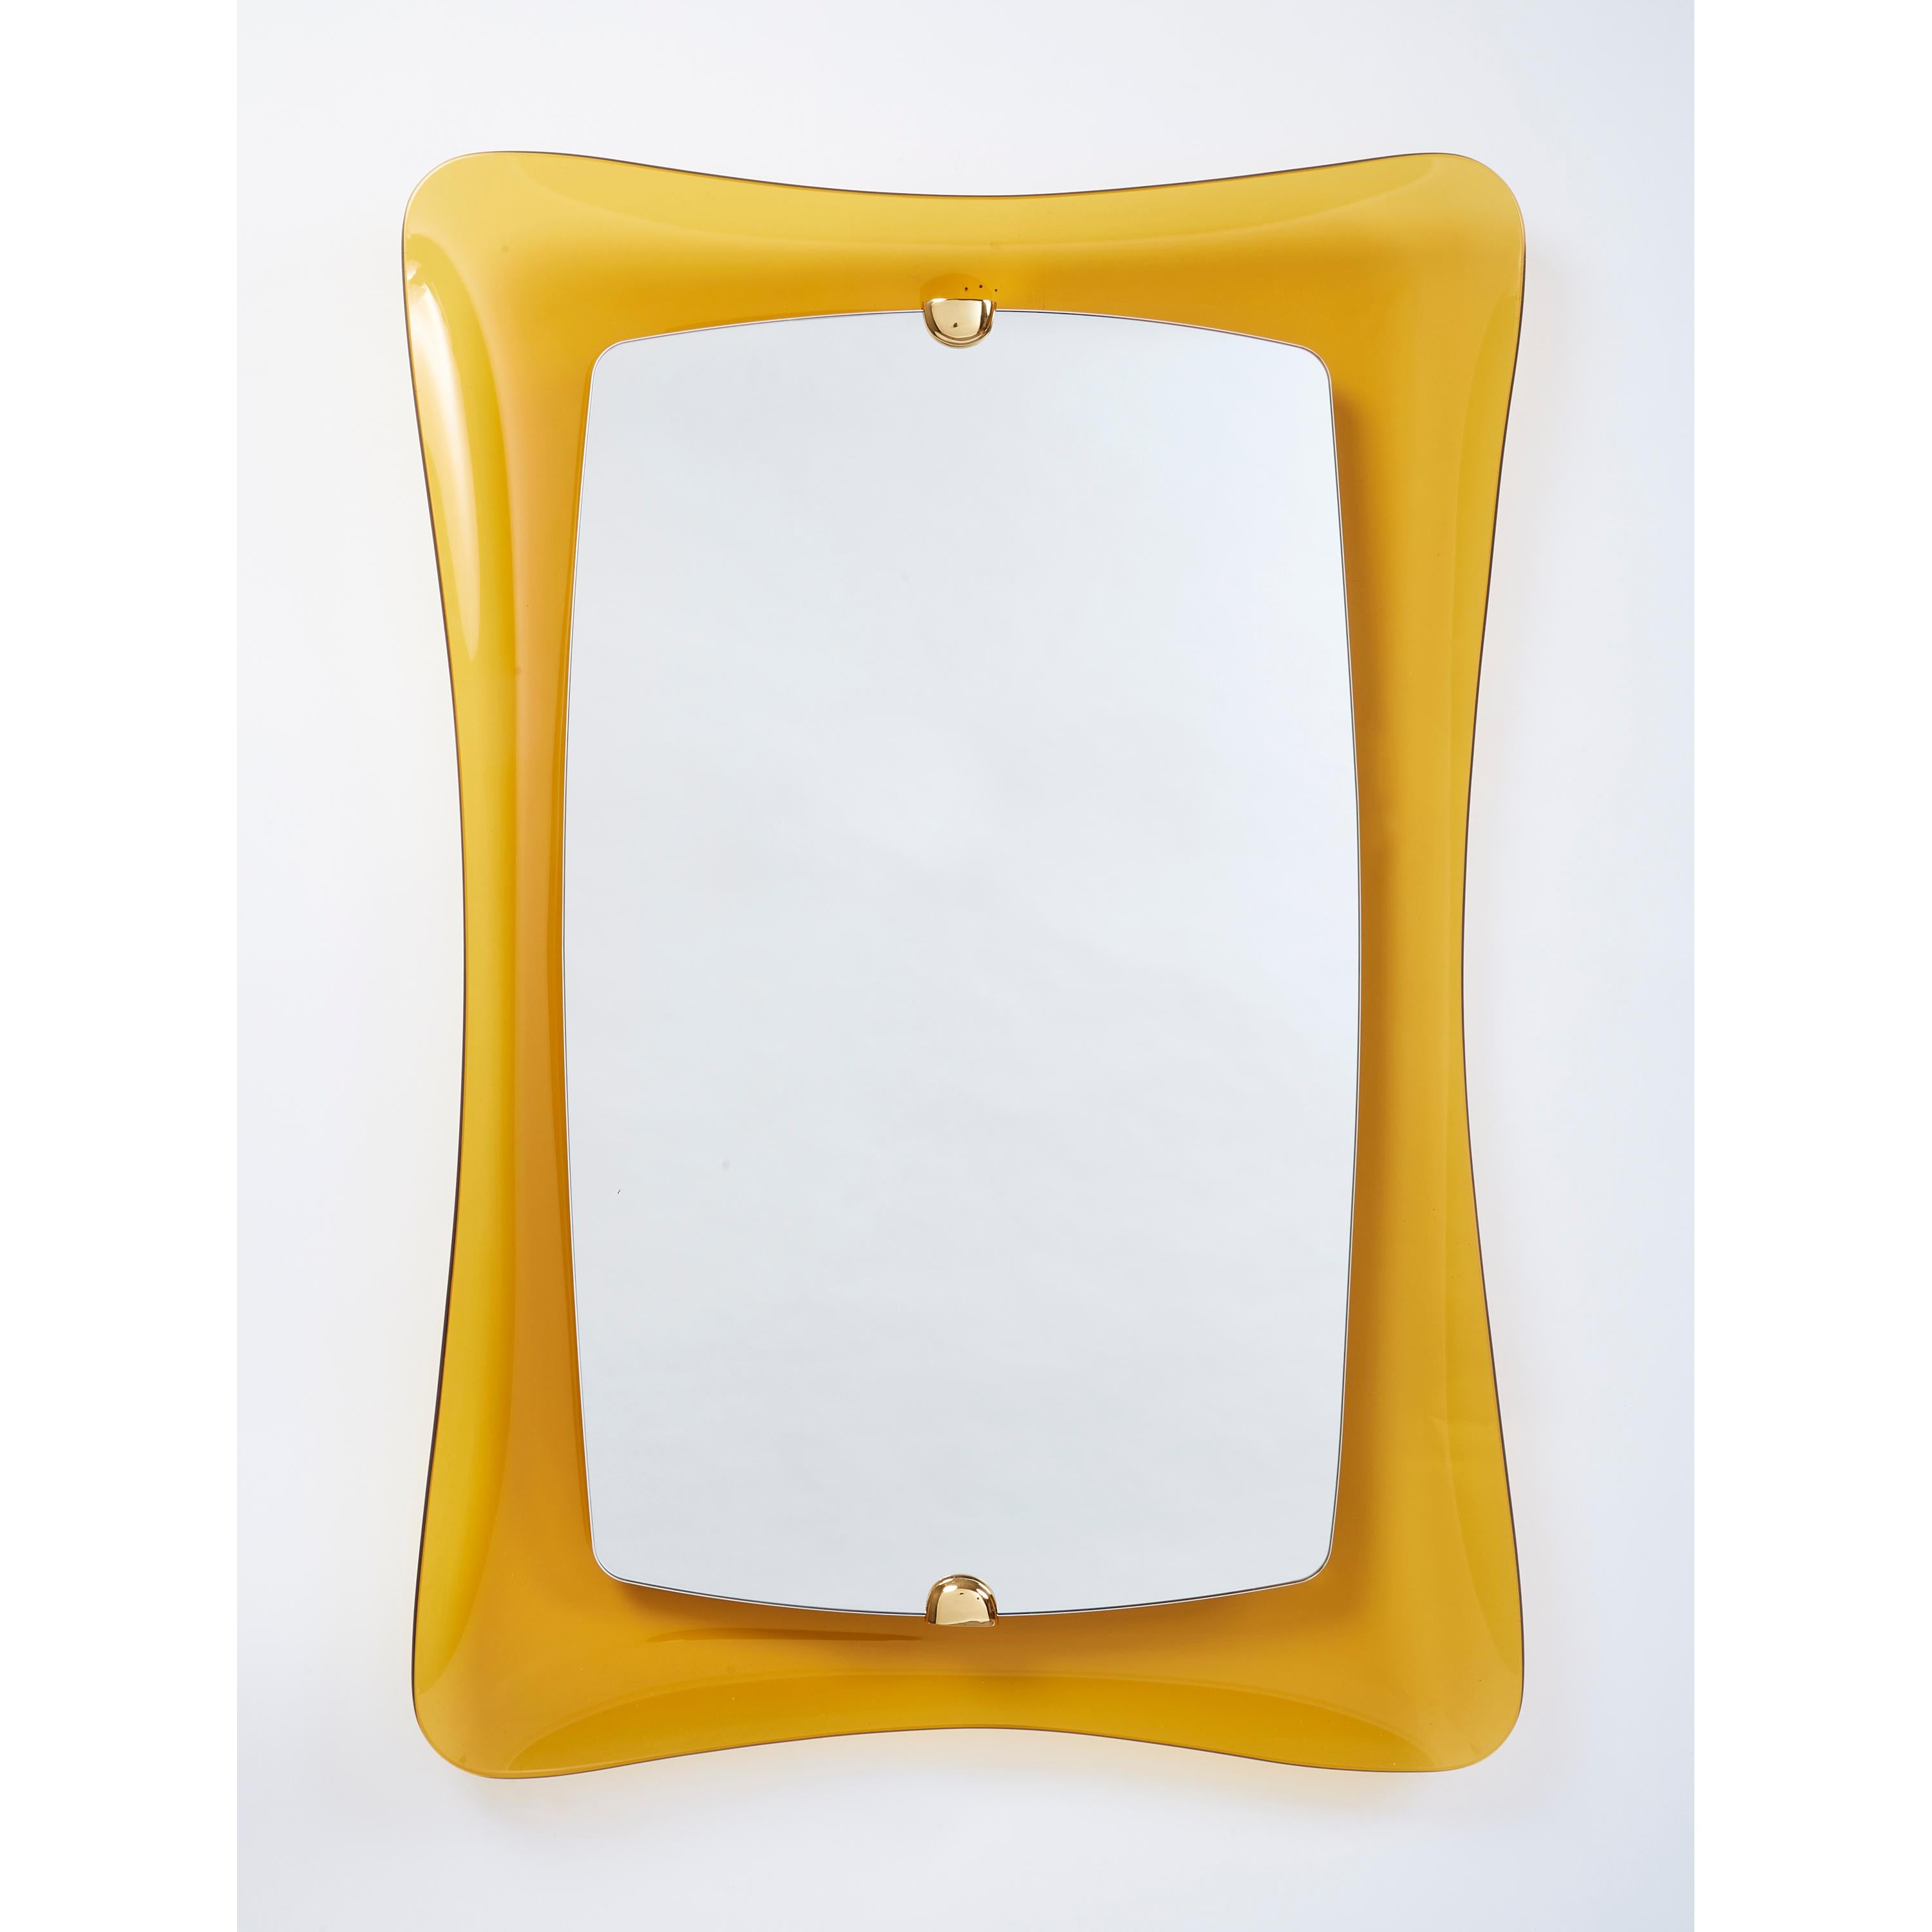 ITALIE, années 1960
Un superbe miroir en verre aux formes sensuellement arrondies en verre jaune ambré,
avec de riches montures en bronze .
39,5 H X 27 L X 3 P